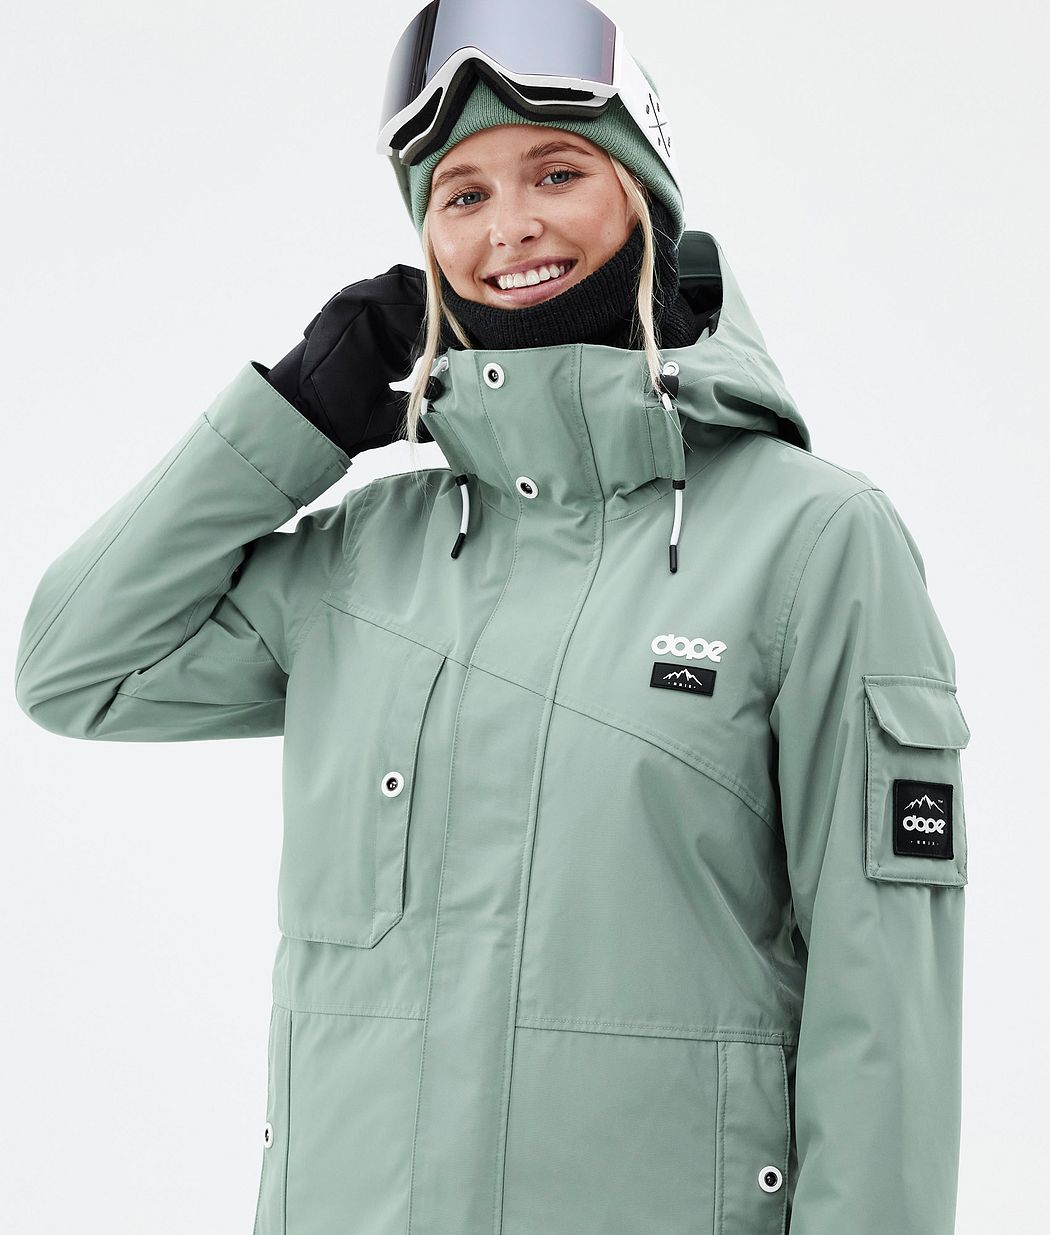 Adept W Snowboard Jacket Women Faded Green